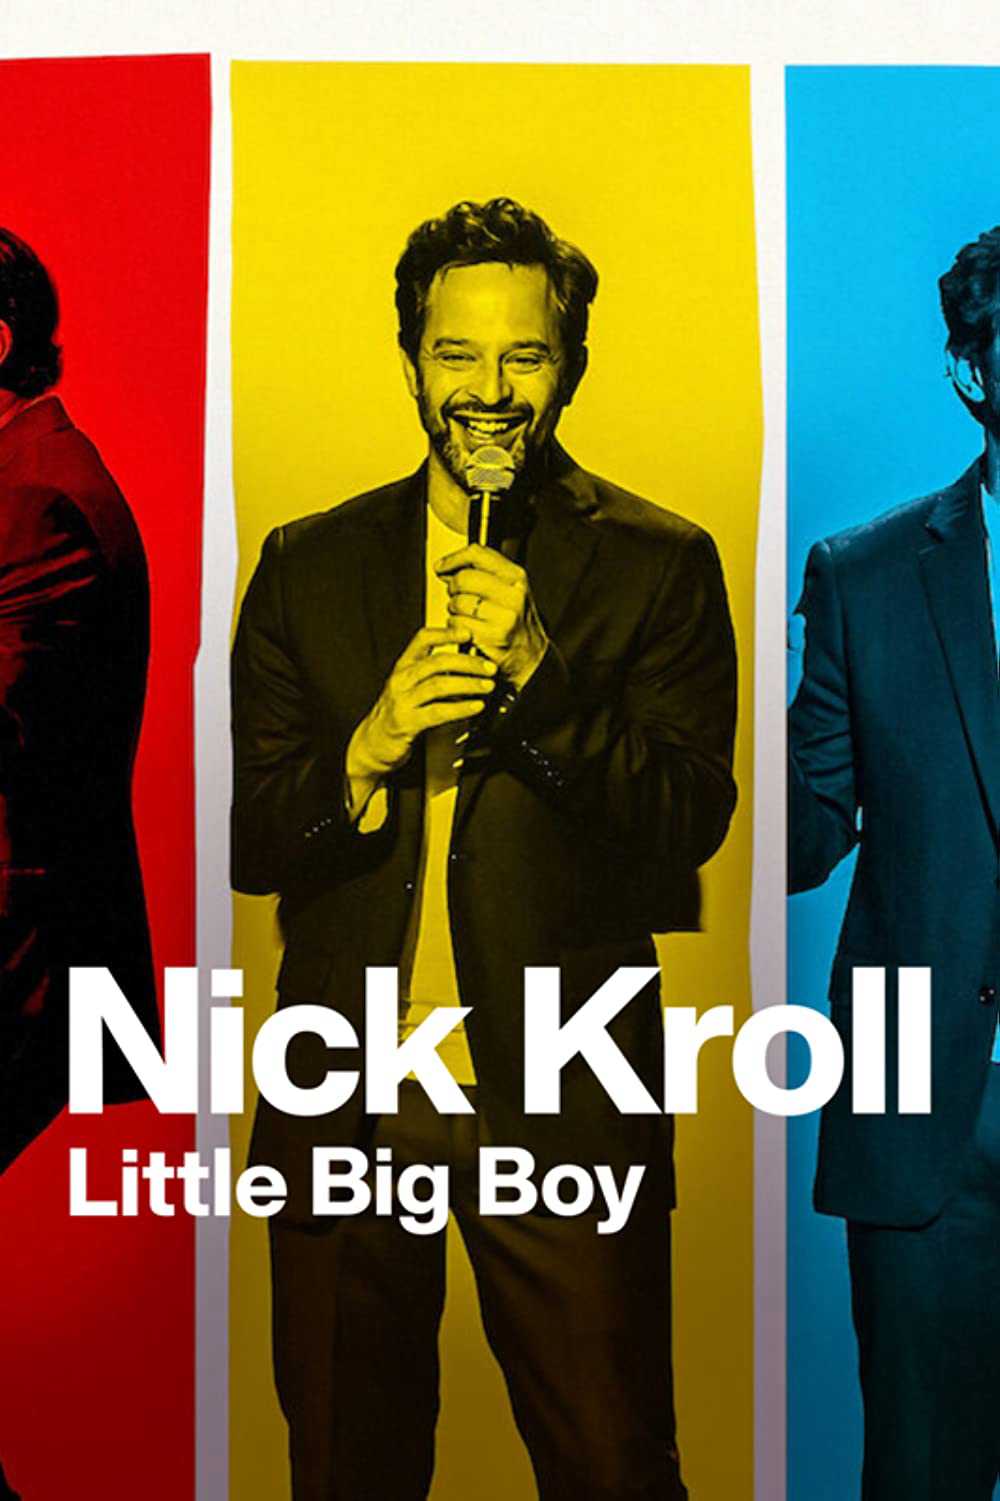 Nick kroll: cậu bé lớn xác - Nick kroll: little big boy